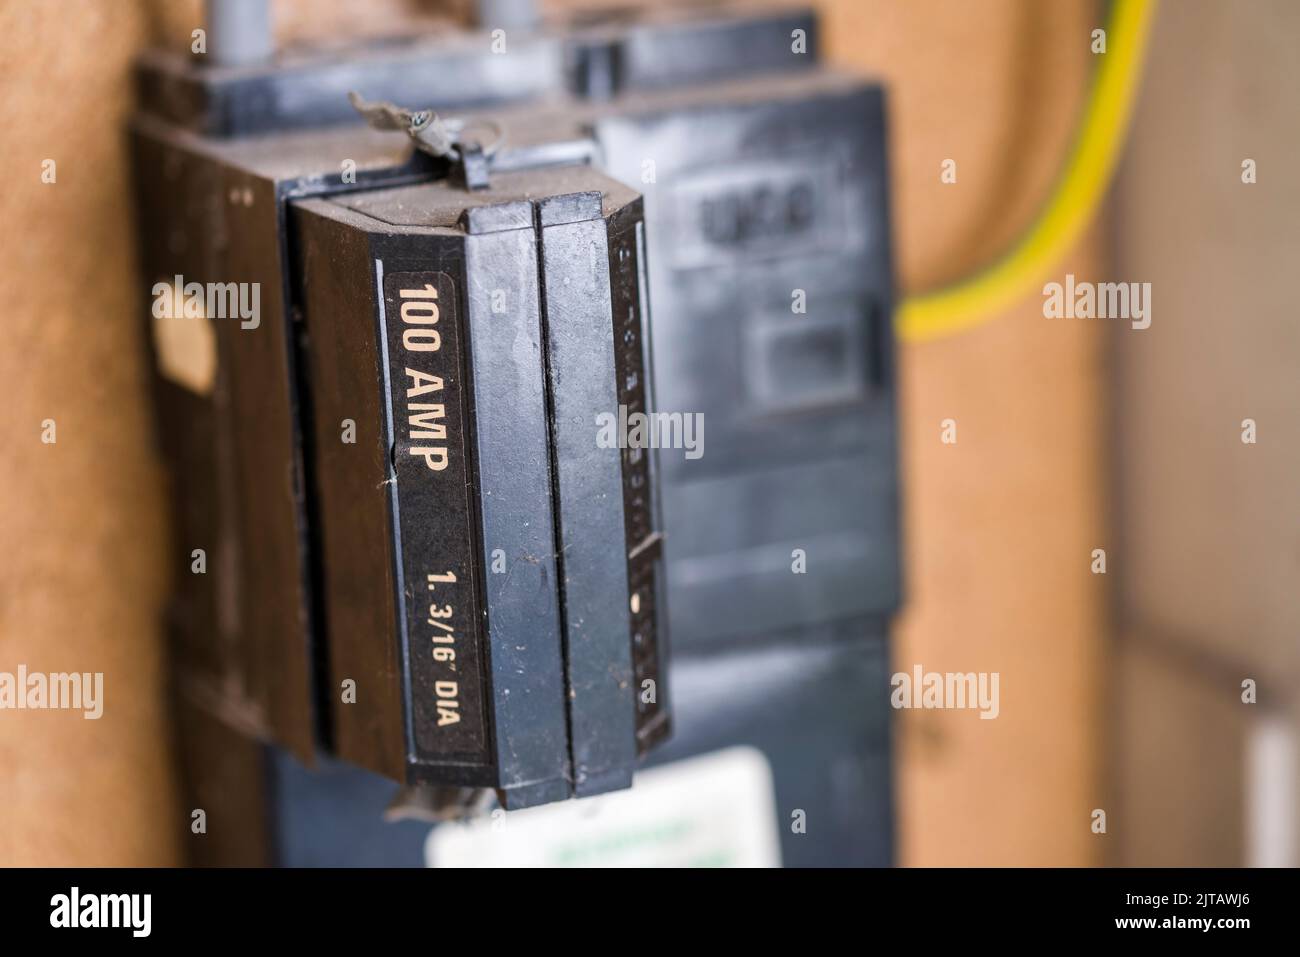 100 amp immagini e fotografie stock ad alta risoluzione - Alamy